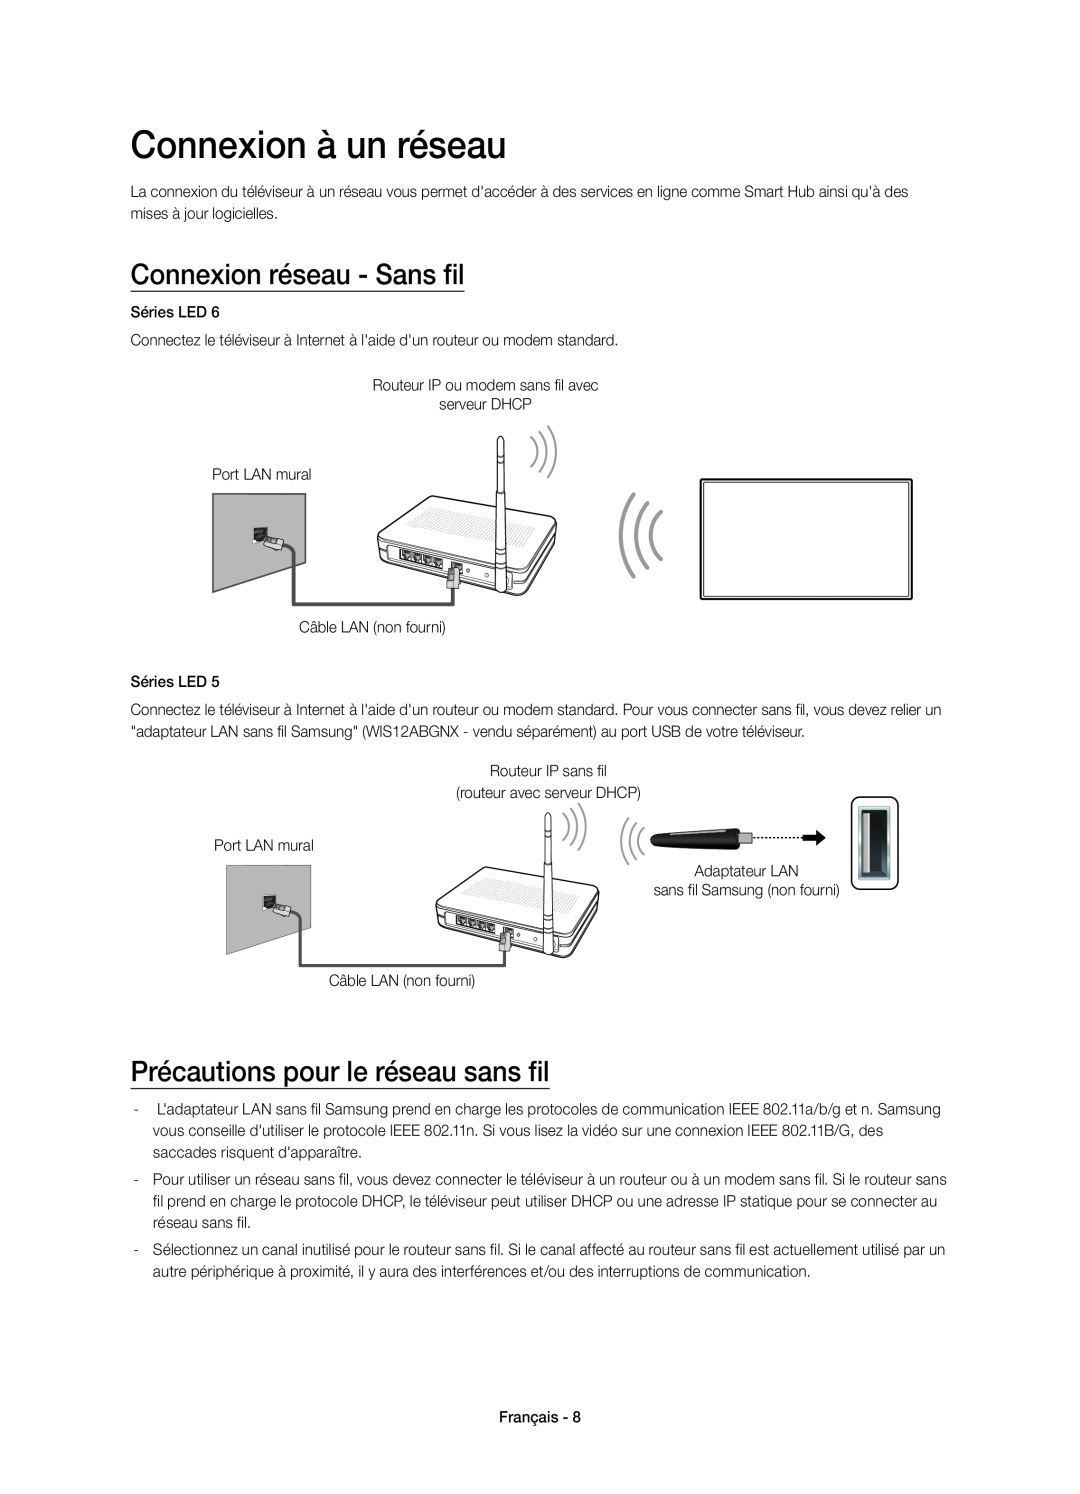 Samsung UE32H5373SSXZG manual Connexion à un réseau, Connexion réseau - Sans fil, Précautions pour le réseau sans fil 